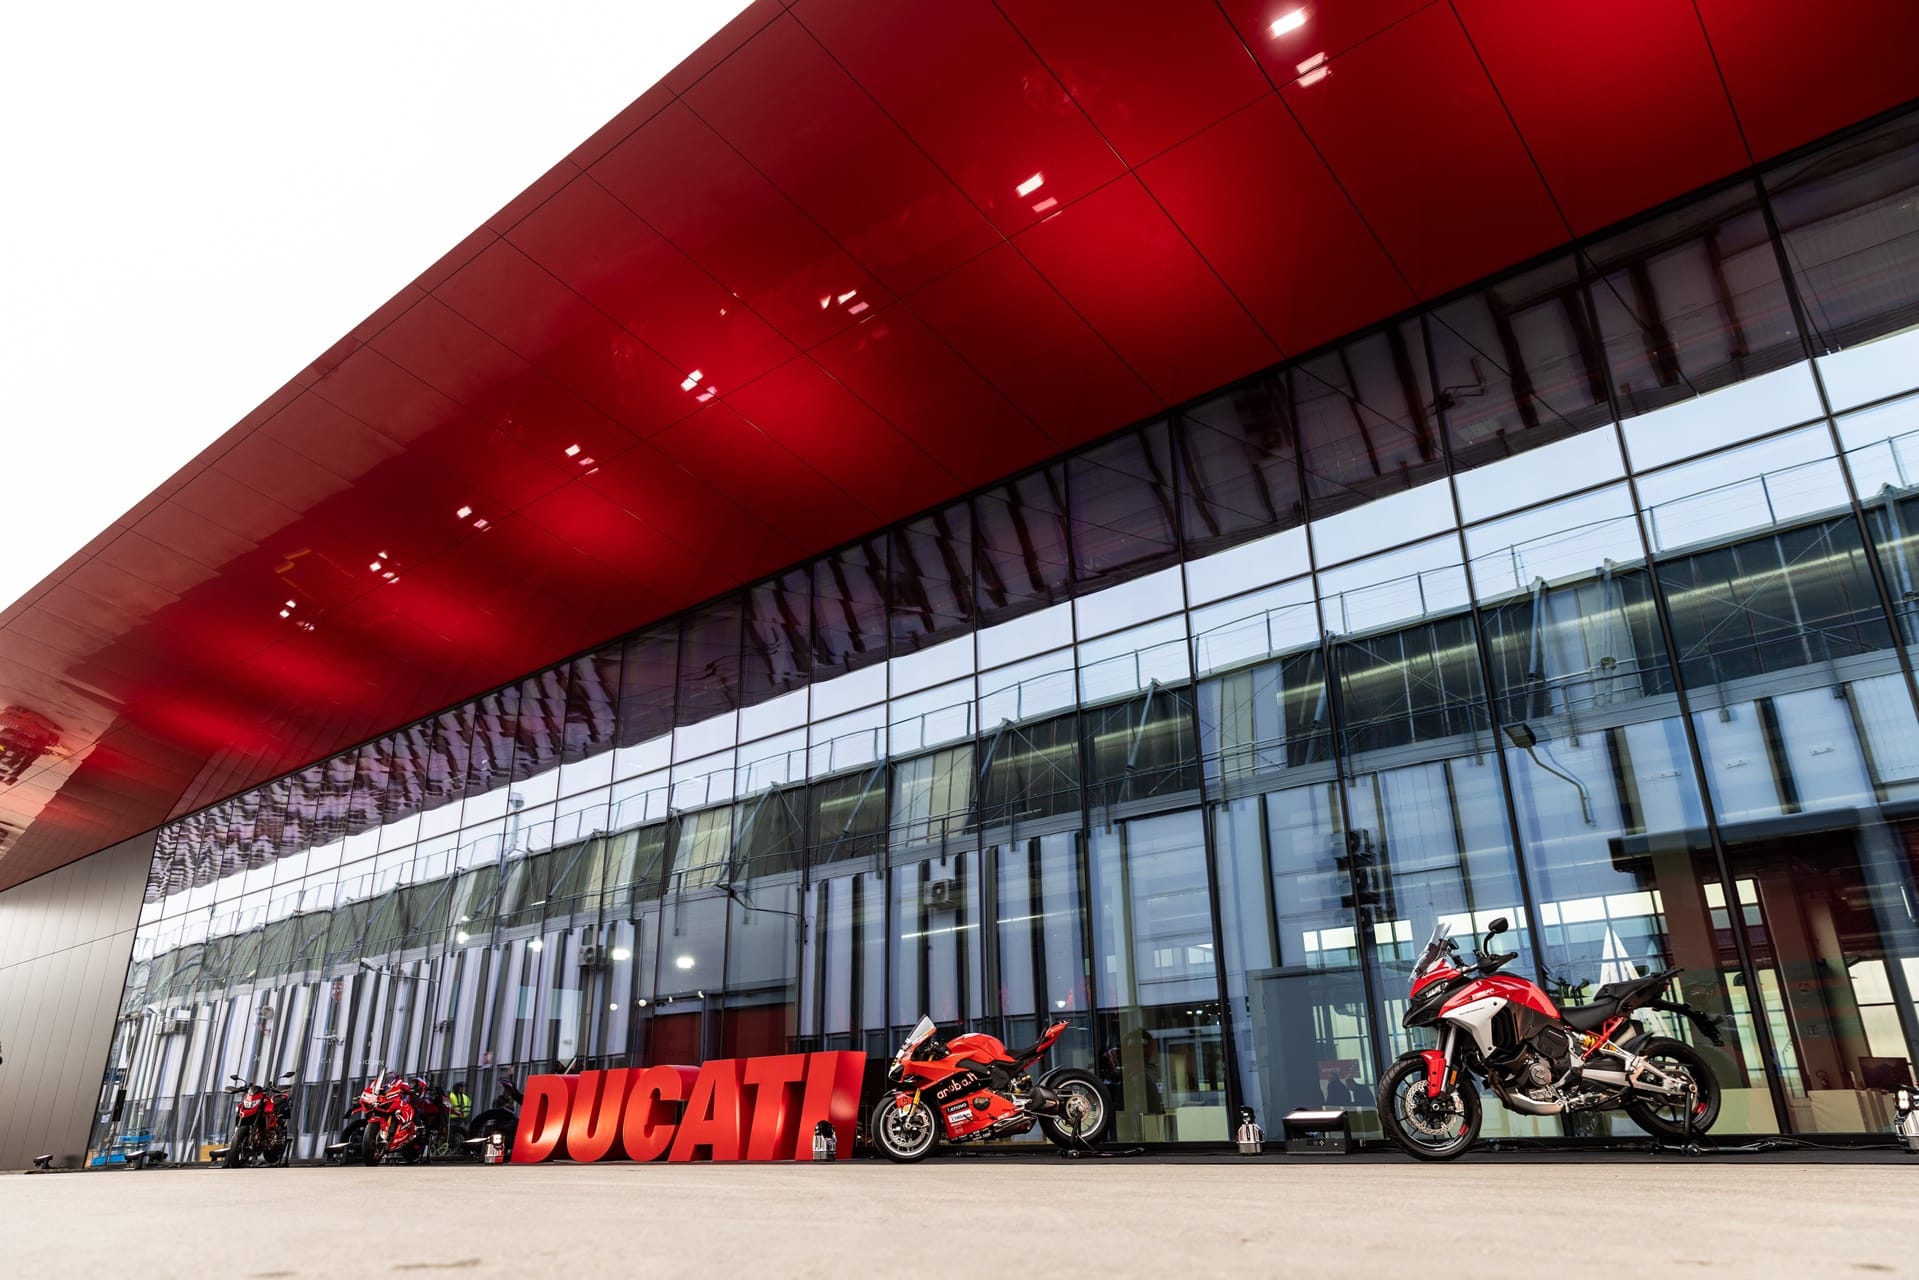 Global Dealer Conference 2023: El evento anual Ducati que reúne a la red de distribuidores de la marca